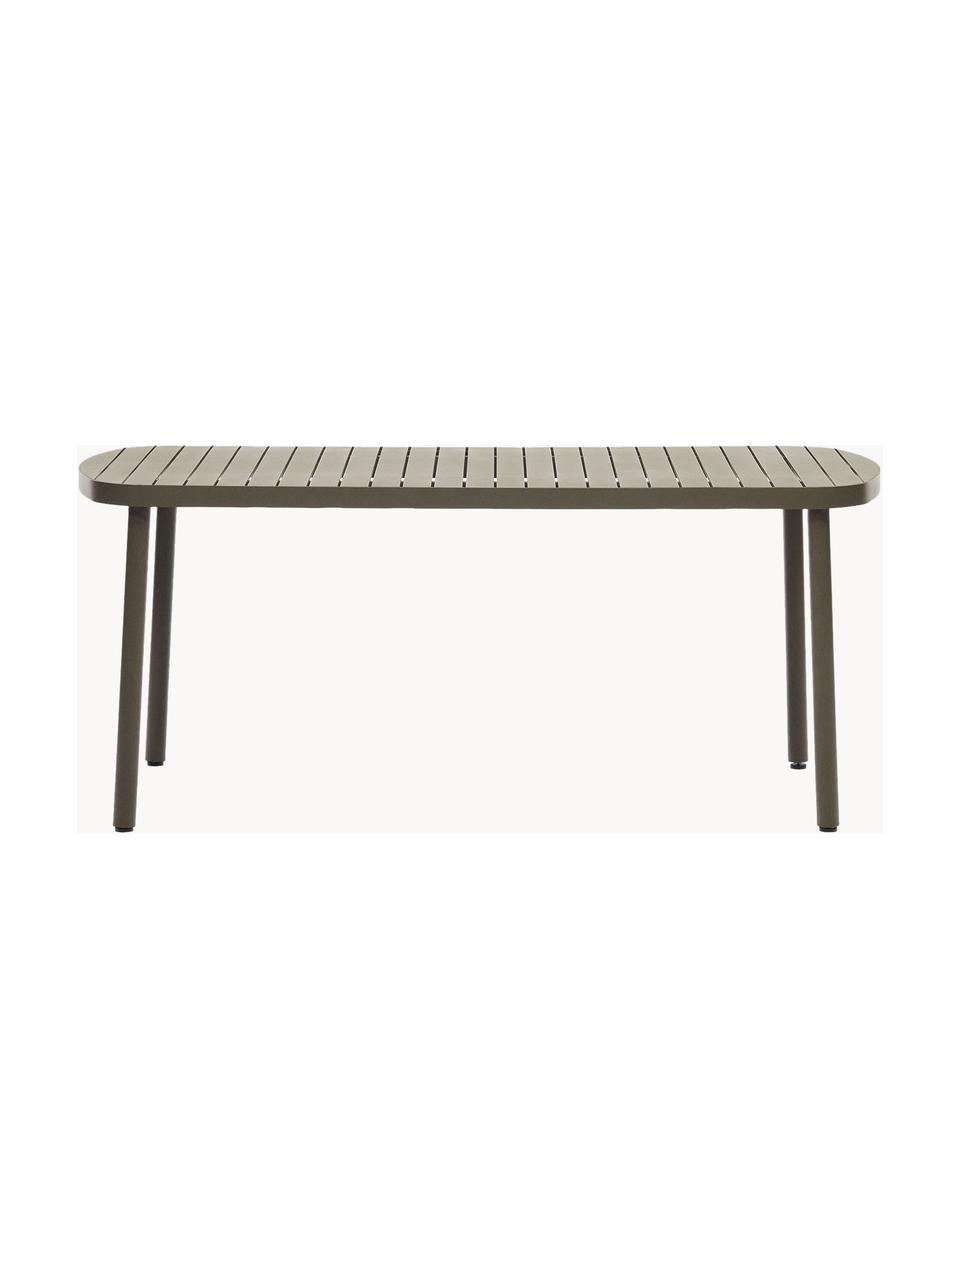 Table de jardin en métal Joncols, Aluminium, revêtement par poudre, Vert olive, larg. 180 x prof. 90 cm